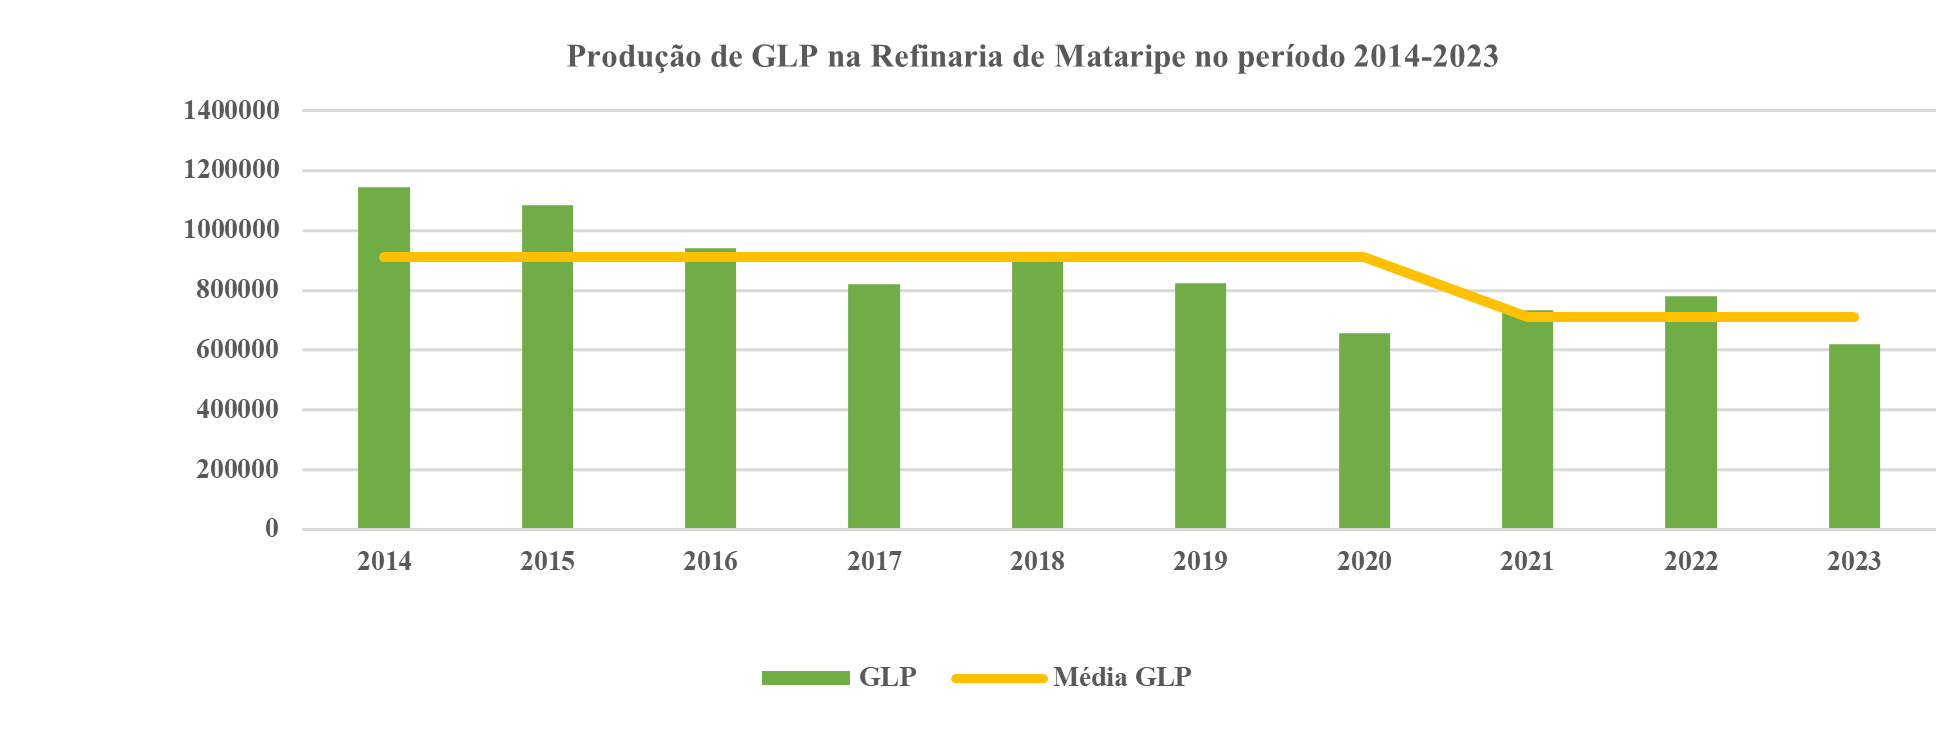 Produção de GLP na REFMAT entre 2014 e 2023.